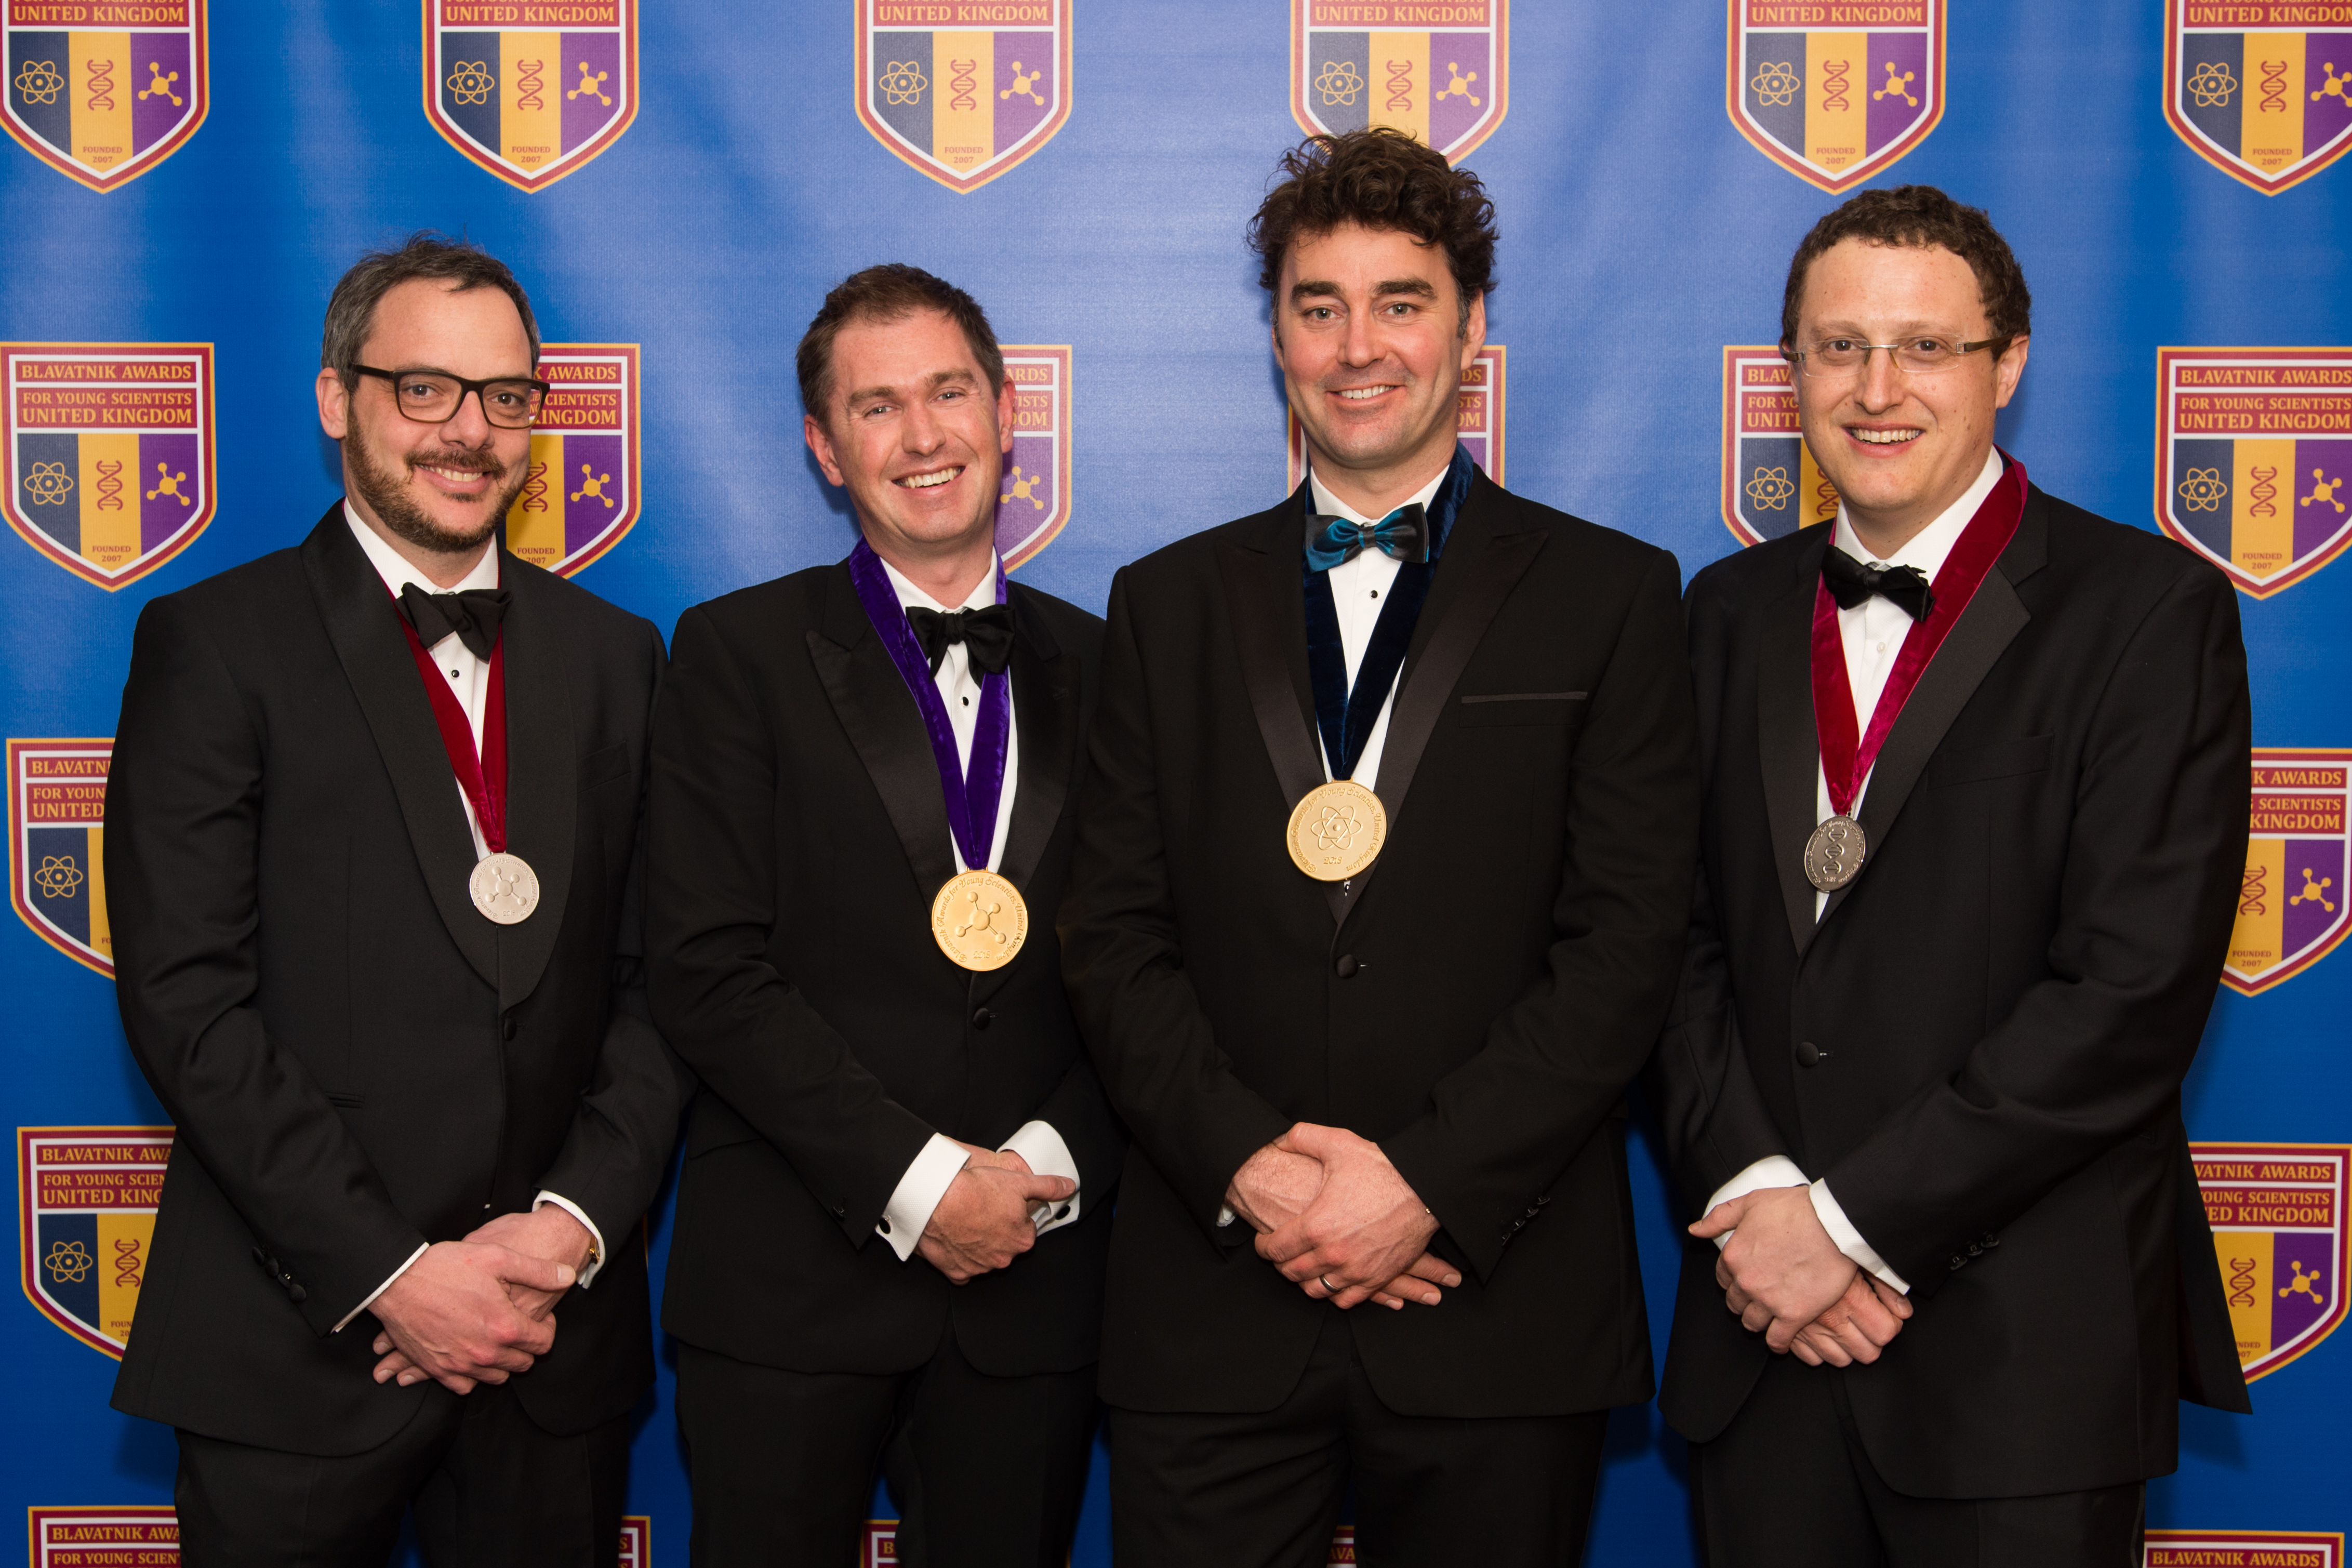 Pioneering Oxford researchers honoured at Blavatnik science awards